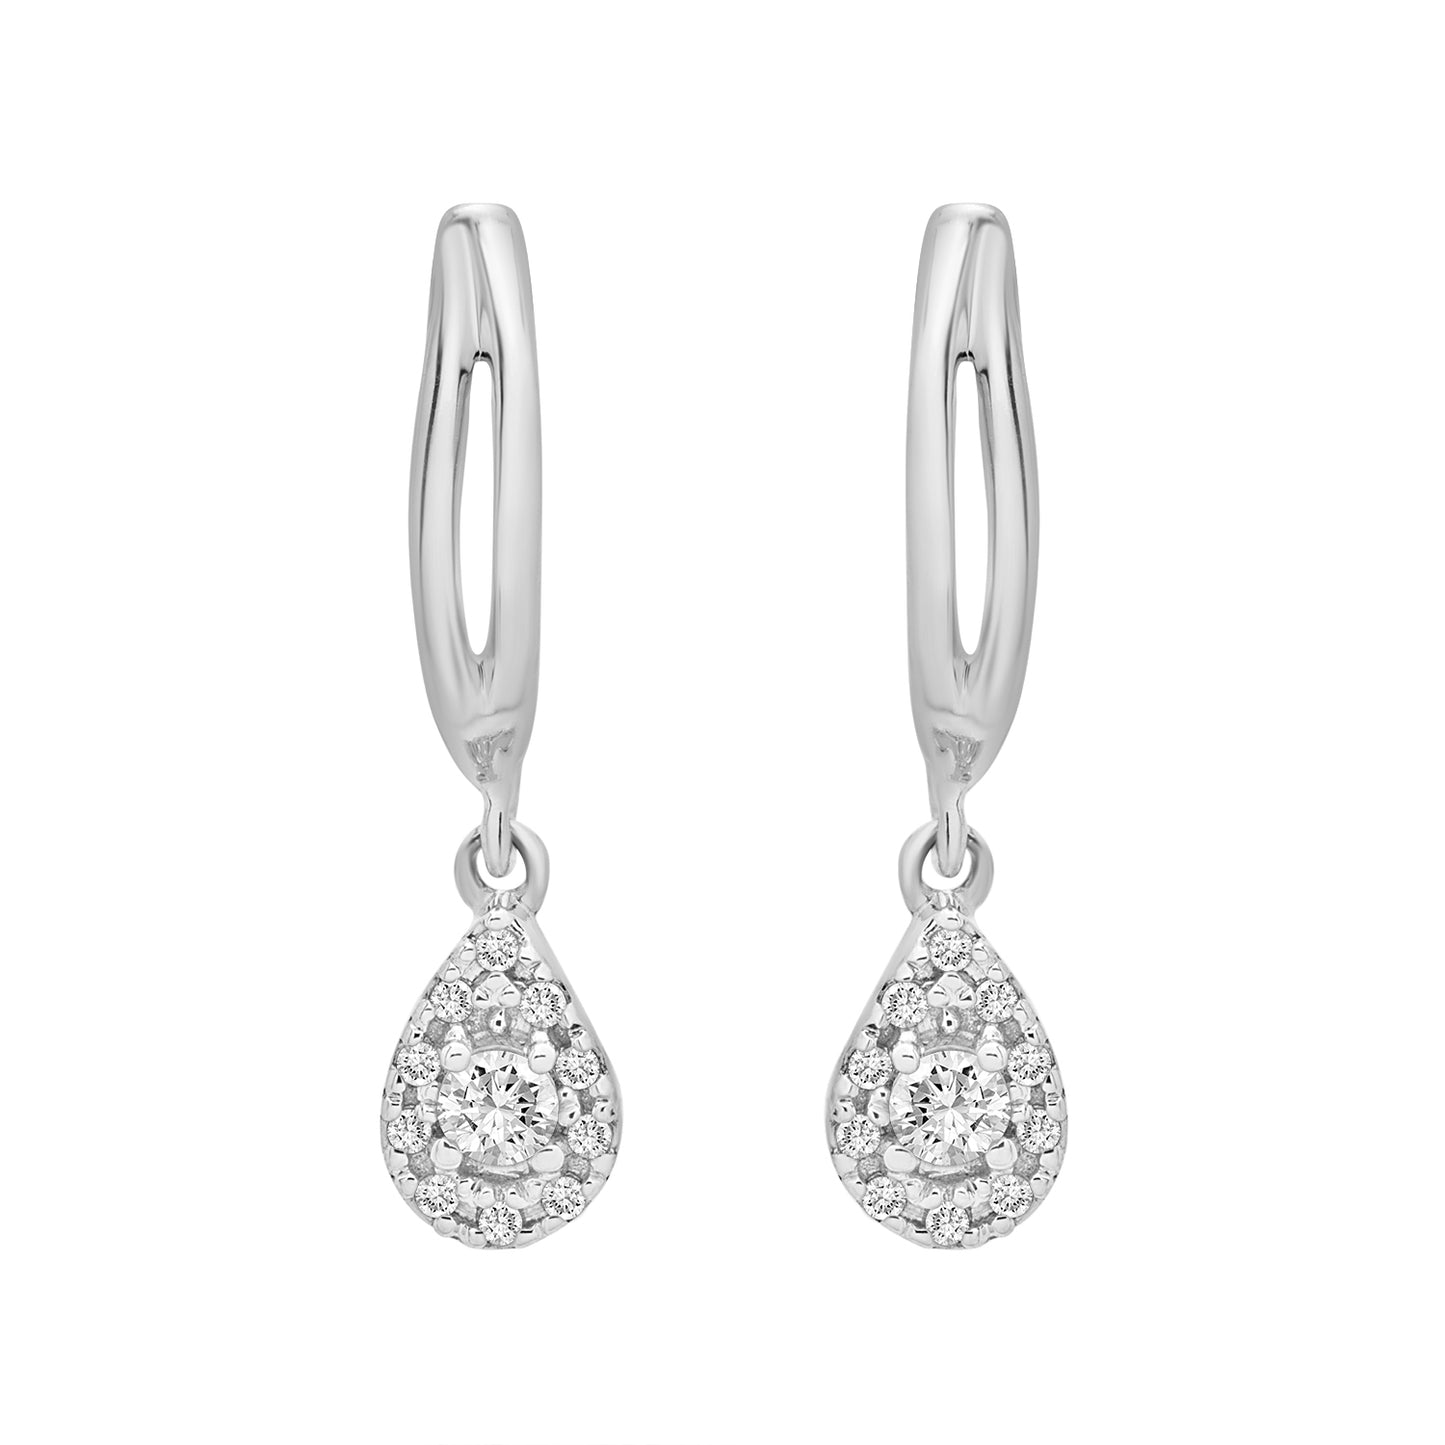 Edan Diamond Pear Dangle Earrings Placed In Silver